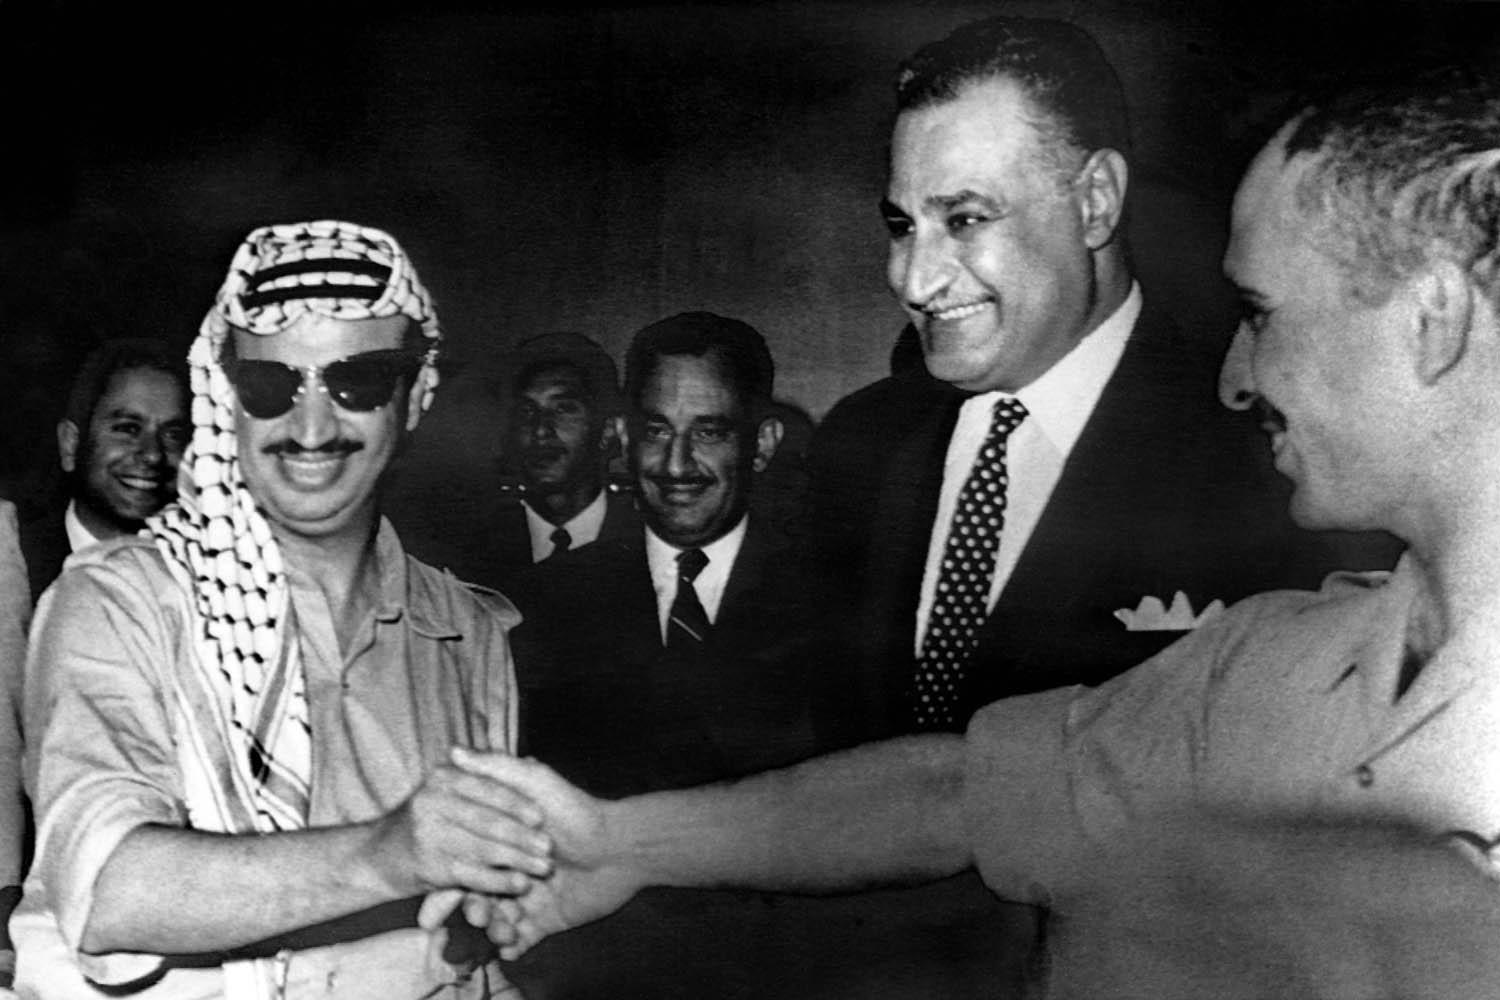 الرئيس المصري الراحل جمال عبدالناصر يتوسط الراحلين العاهل الأردني الملك حسين والرئيس الفلسطيني ياسر عرفات (1970)